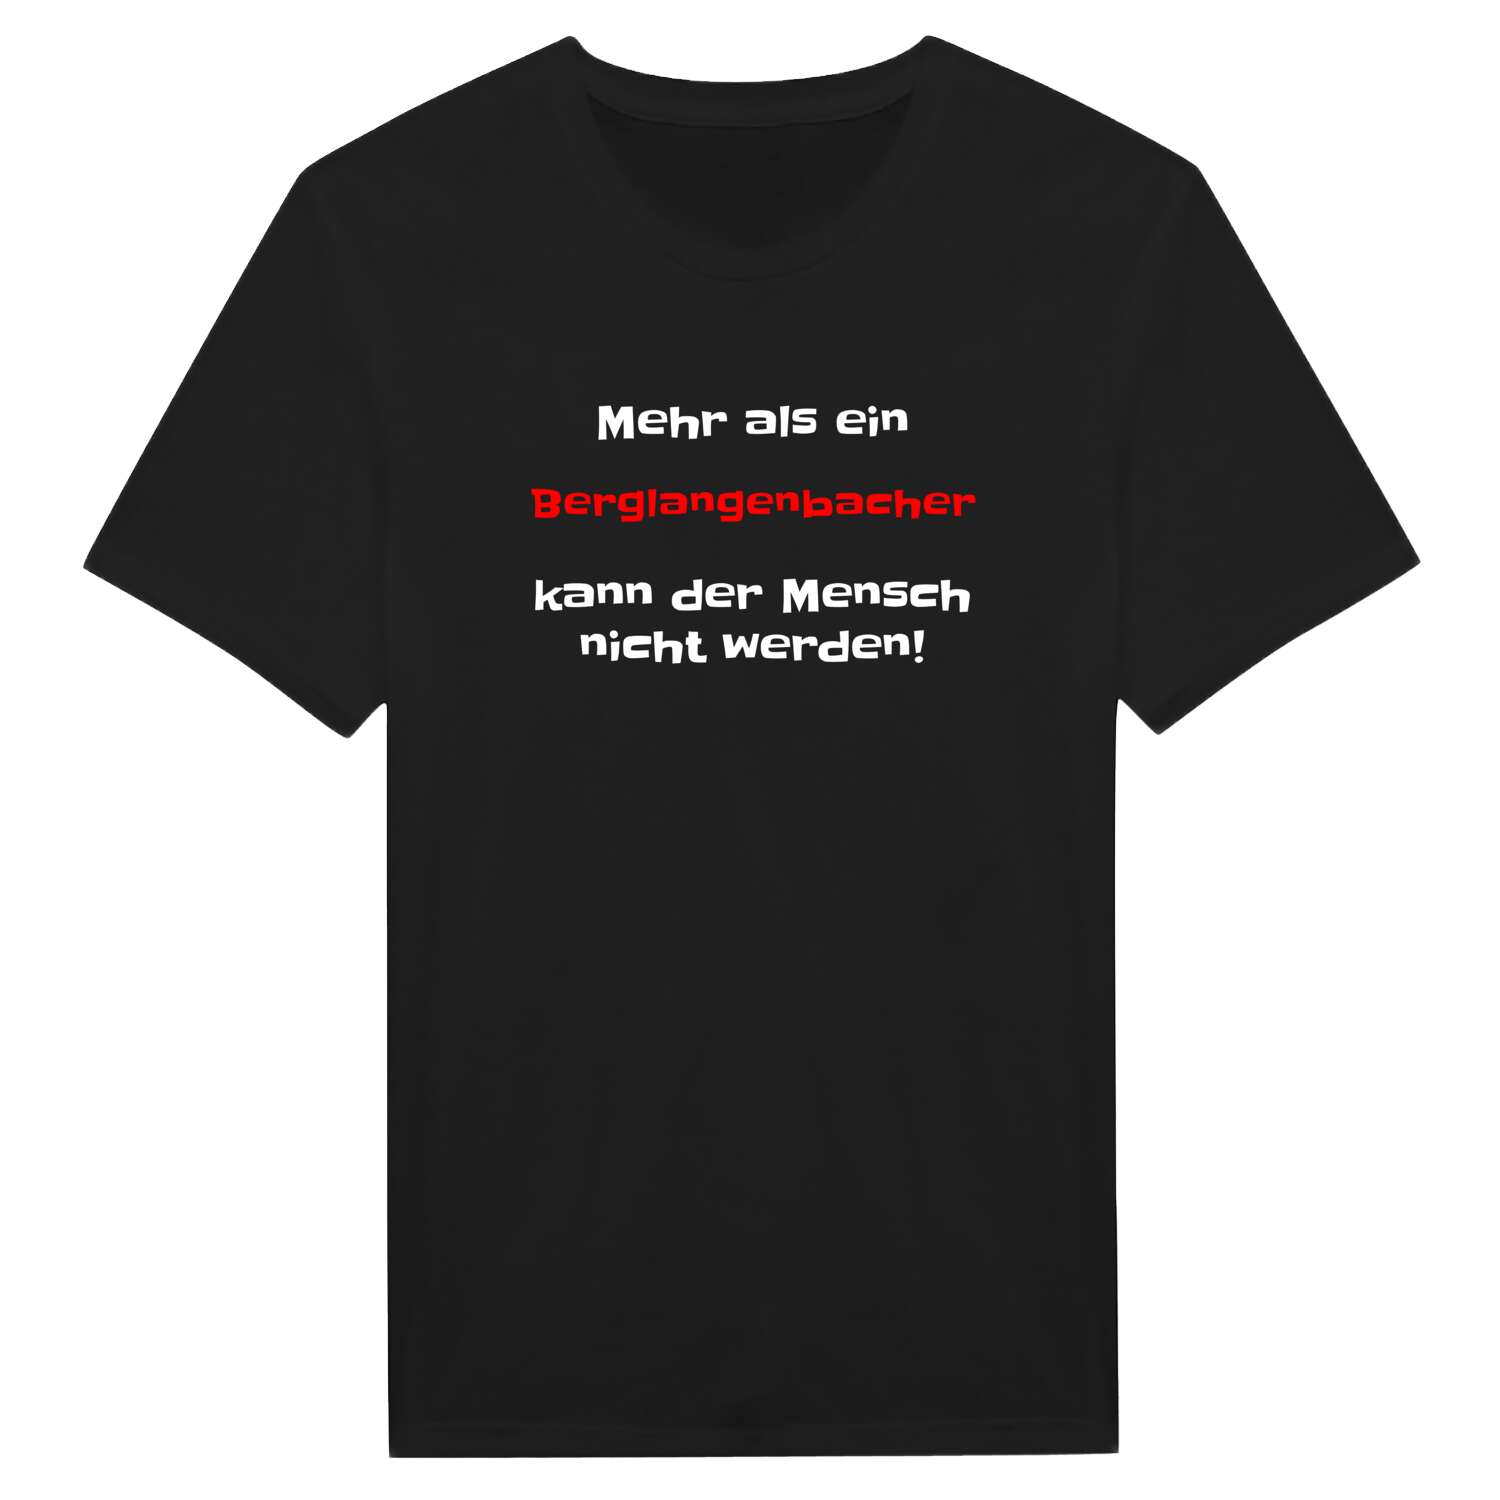 Berglangenbach T-Shirt »Mehr als ein«